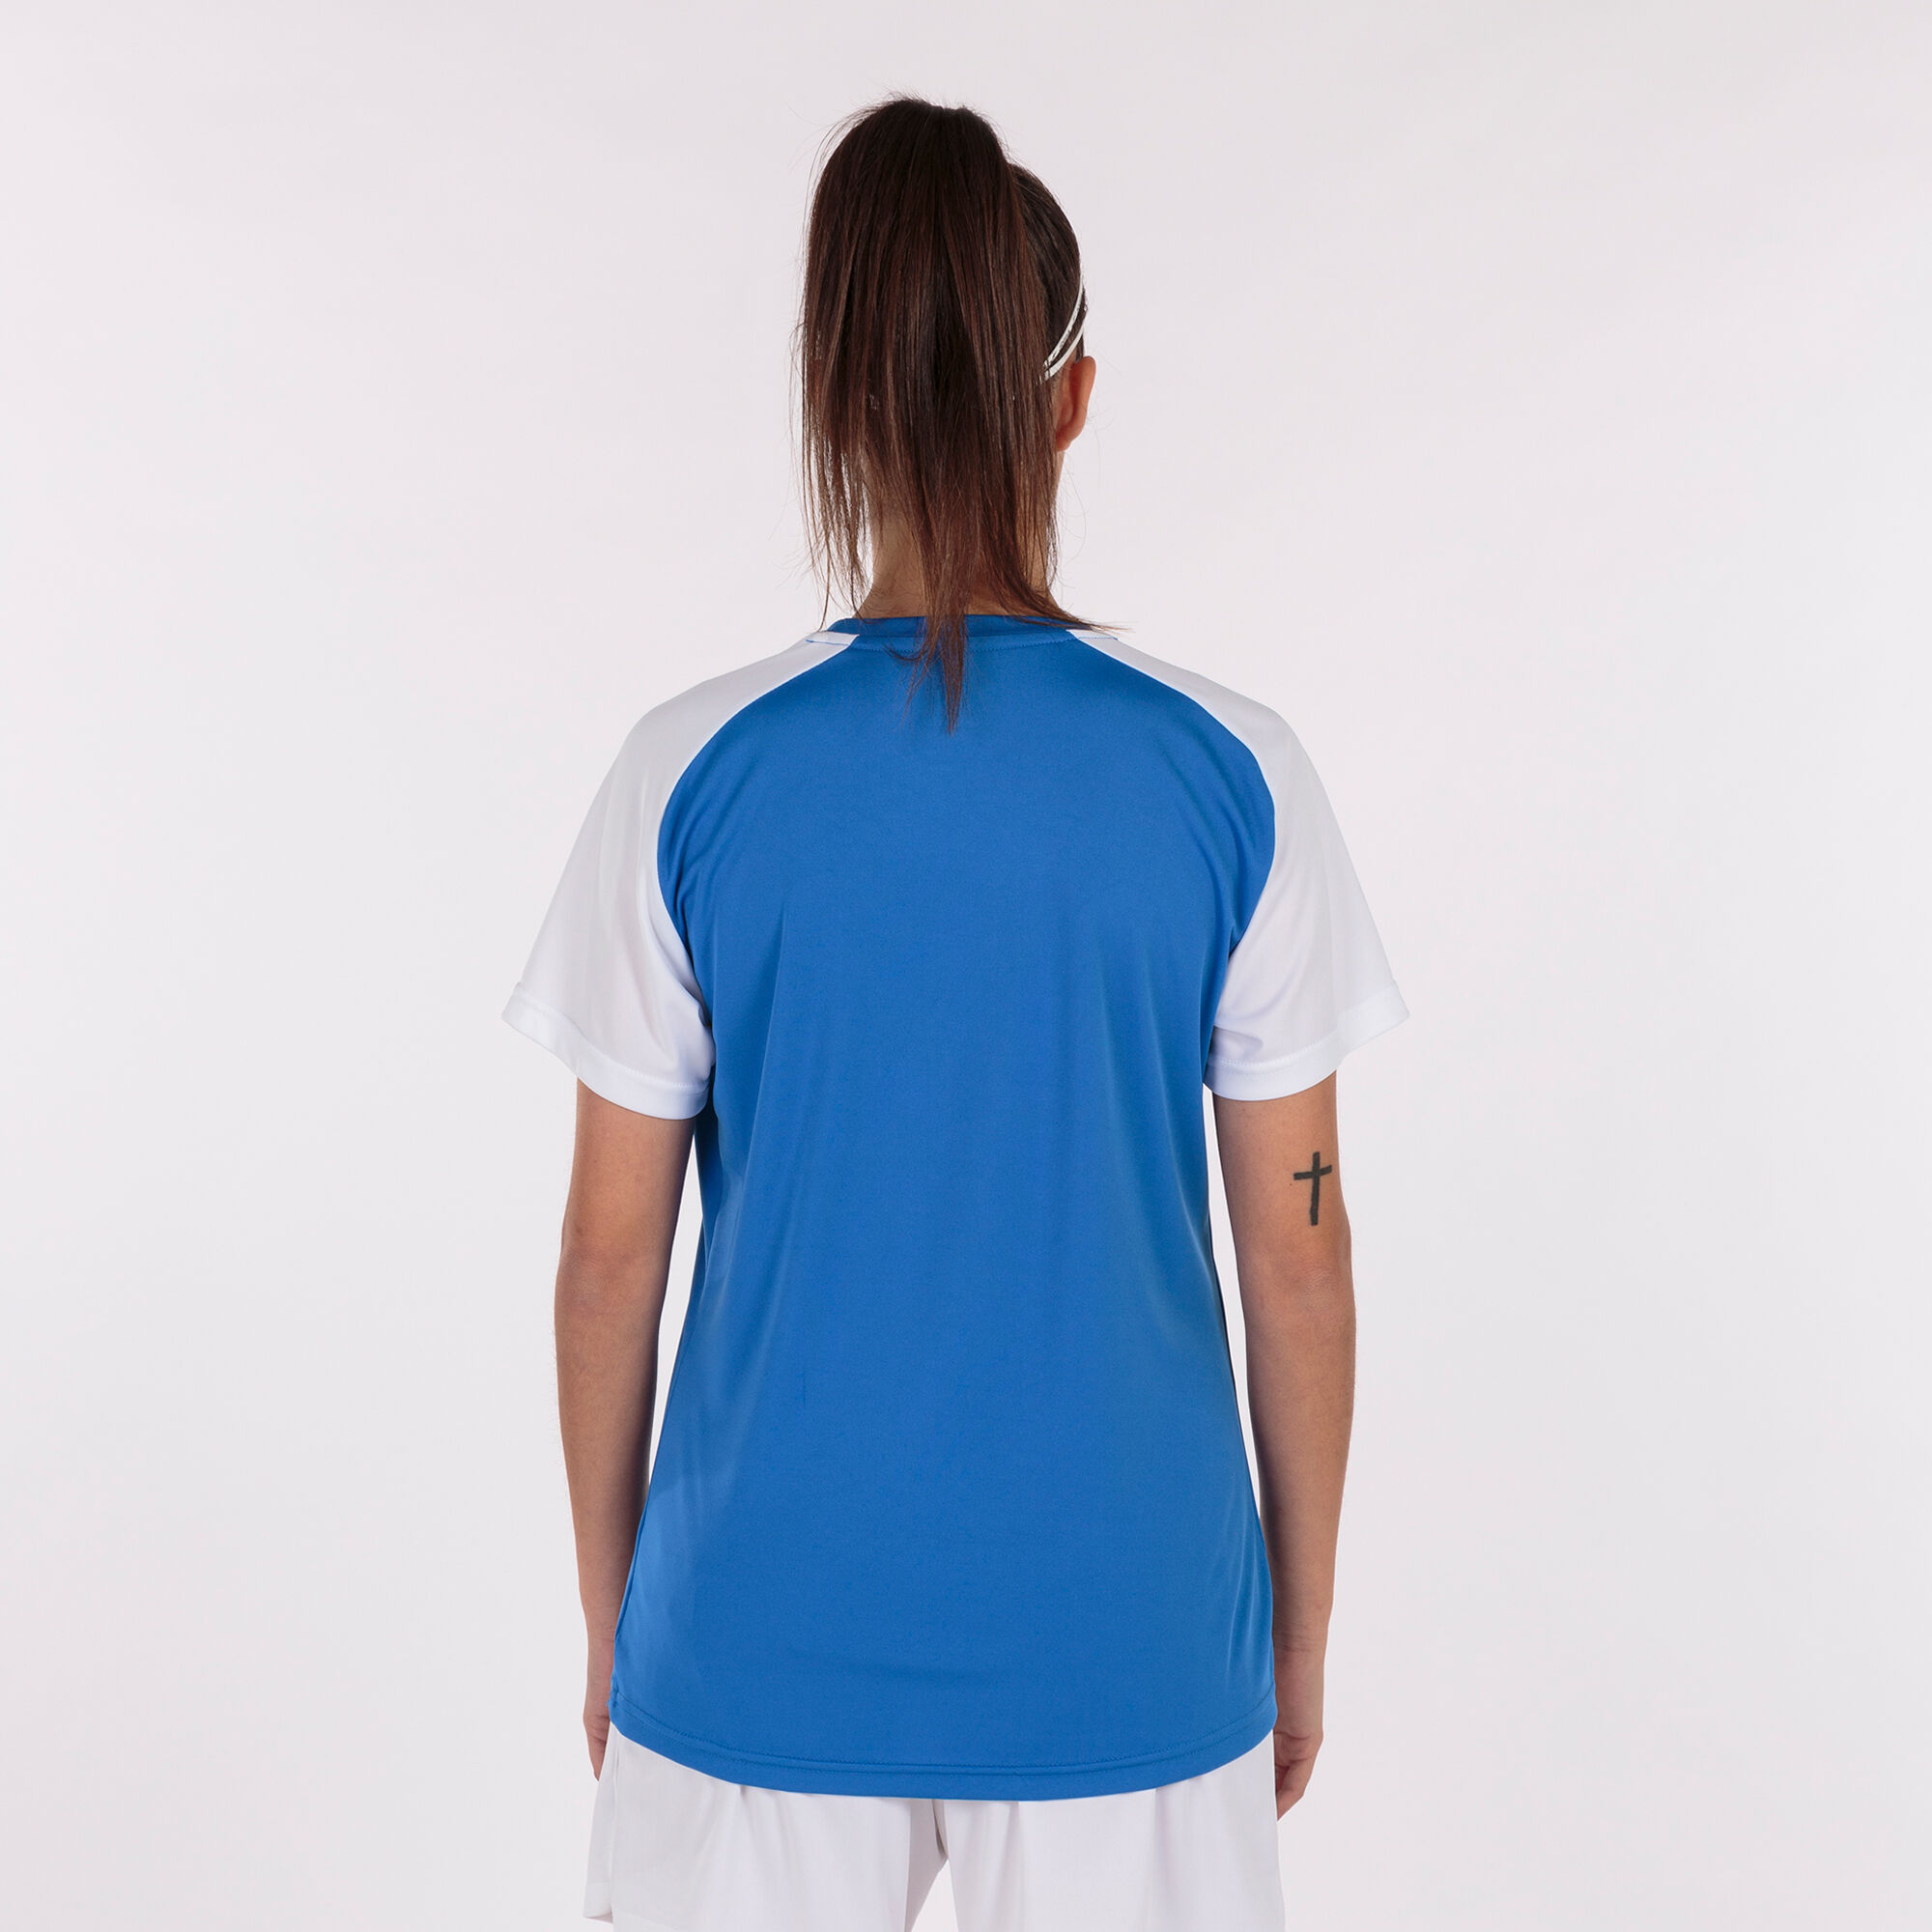 Koszulka z krótkim rękawem kobiety Academy IV niebieski royal bialy